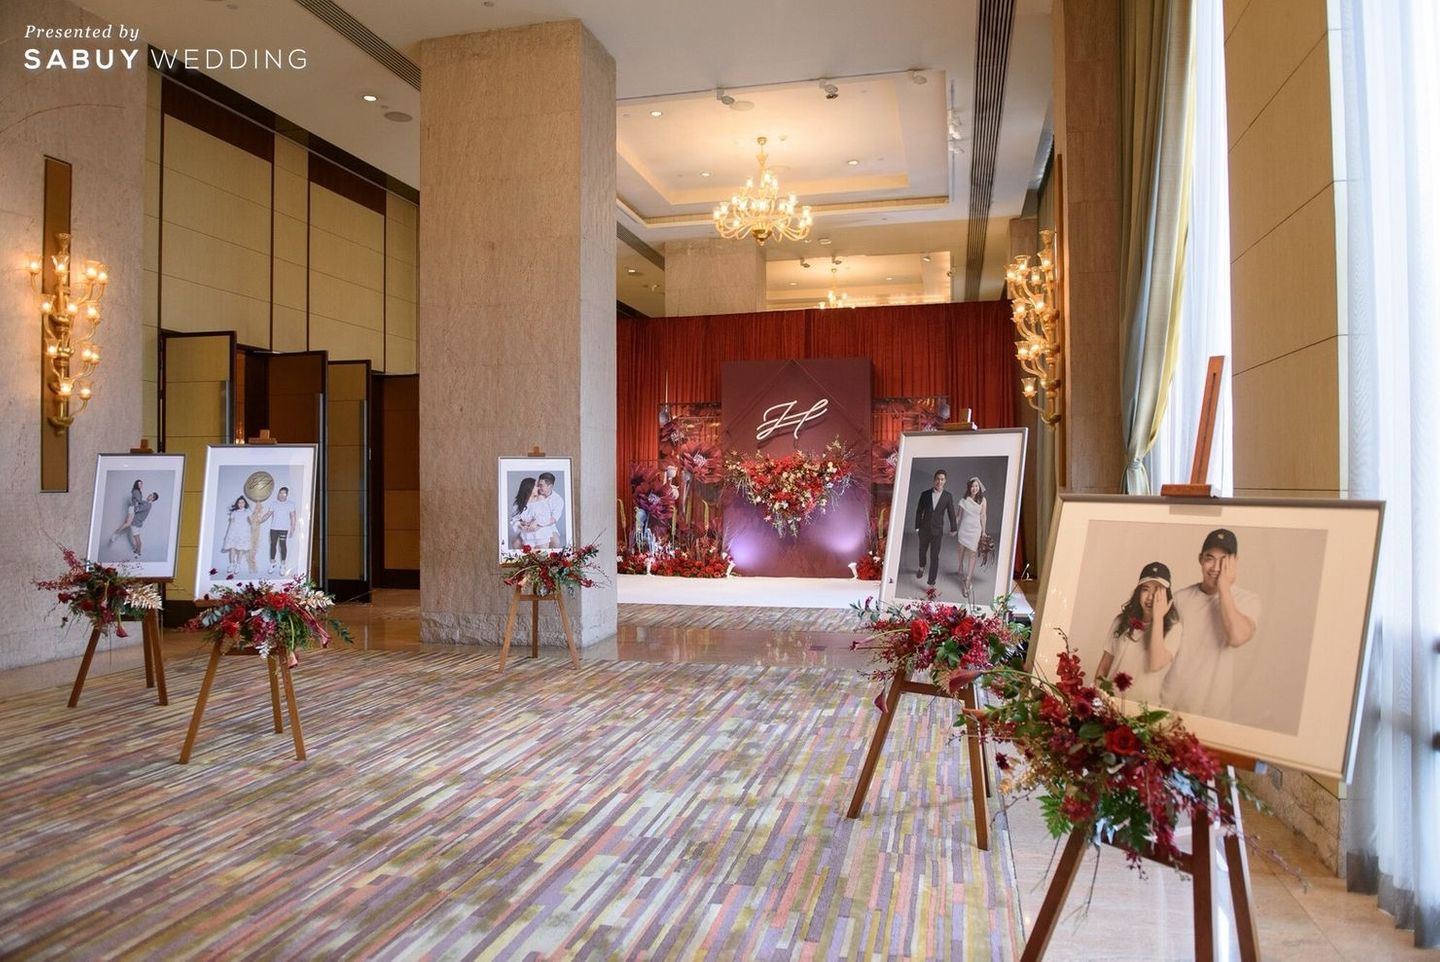 สถานที่แต่งงาน,โรงแรม,ดอกไม้,จัดดอกไม้งานแต่ง,ตกแต่งงานแต่ง,backdrop งานแต่ง รีวิวงานแต่งสีแดง สวยแพงสุดชิค ลุคจีนโมเดิร์น @Conrad Bangkok